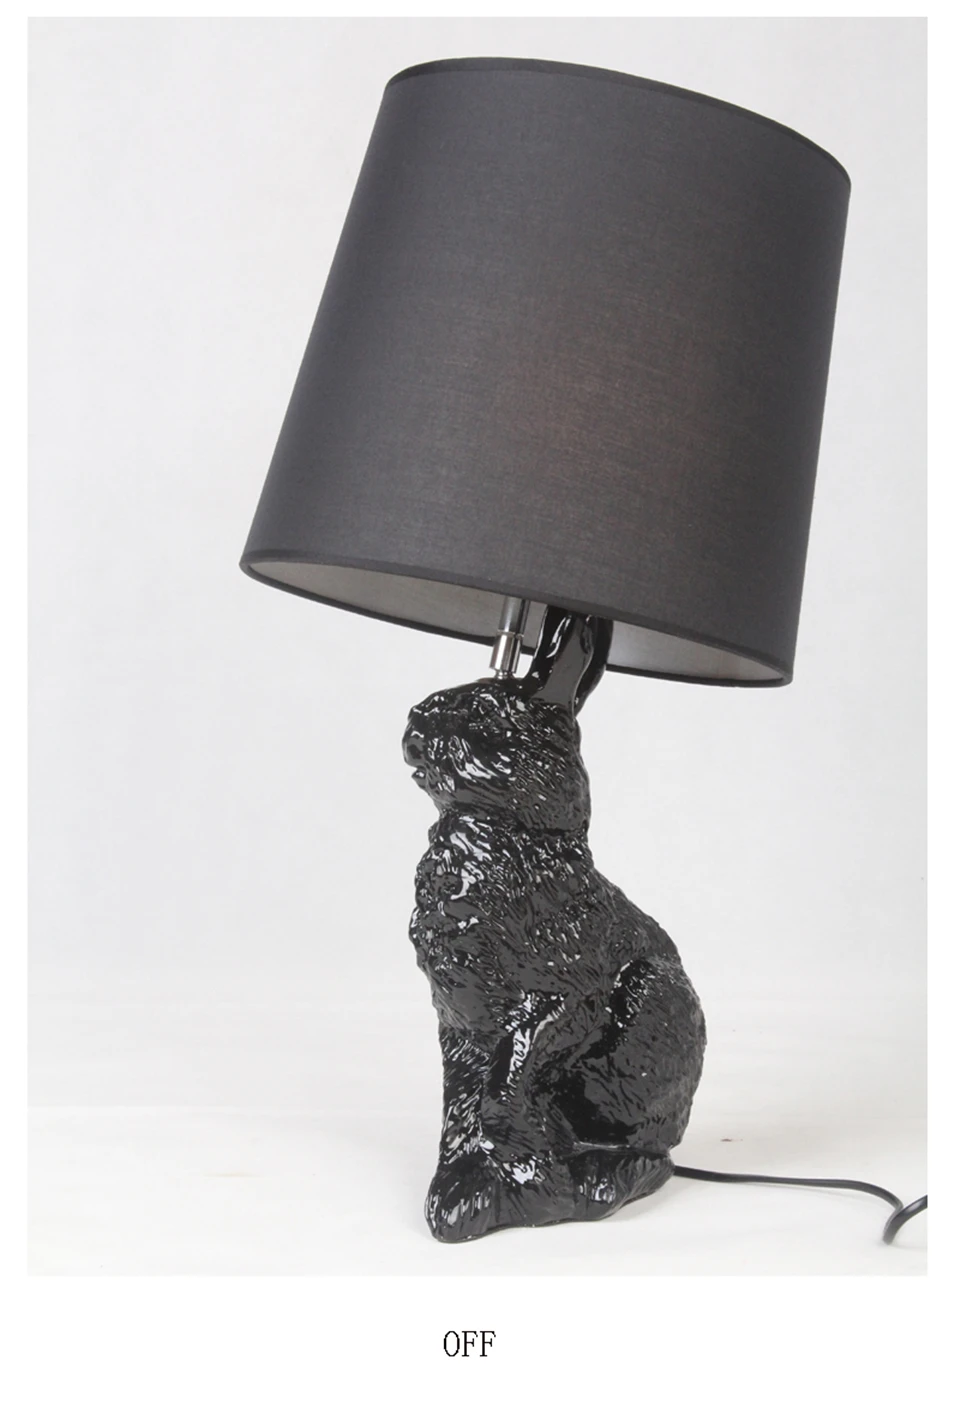 Современный светодиодный Настольный светильник, художественные лампы в форме кролика из смолы, настольная лампа для спальни, гостиной, кабинета, Декор, прикроватный столик, освещение